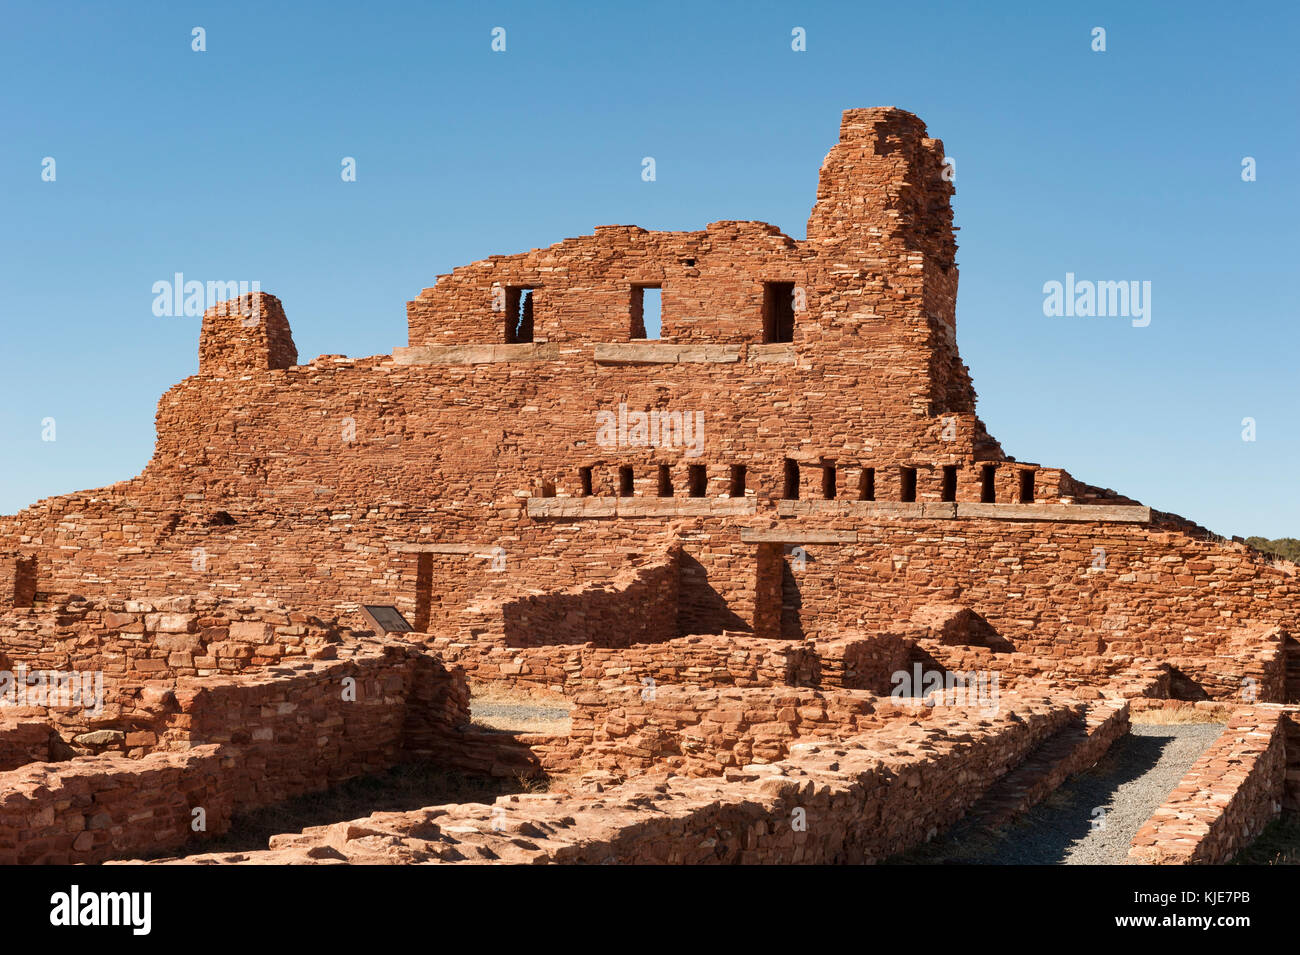 La missione di San Gregorio de Abo rovine, Salinas Pueblo Missions National Monument, Nuovo Messico, NM, Stati Uniti d'America, Stati Uniti d'America. Foto Stock